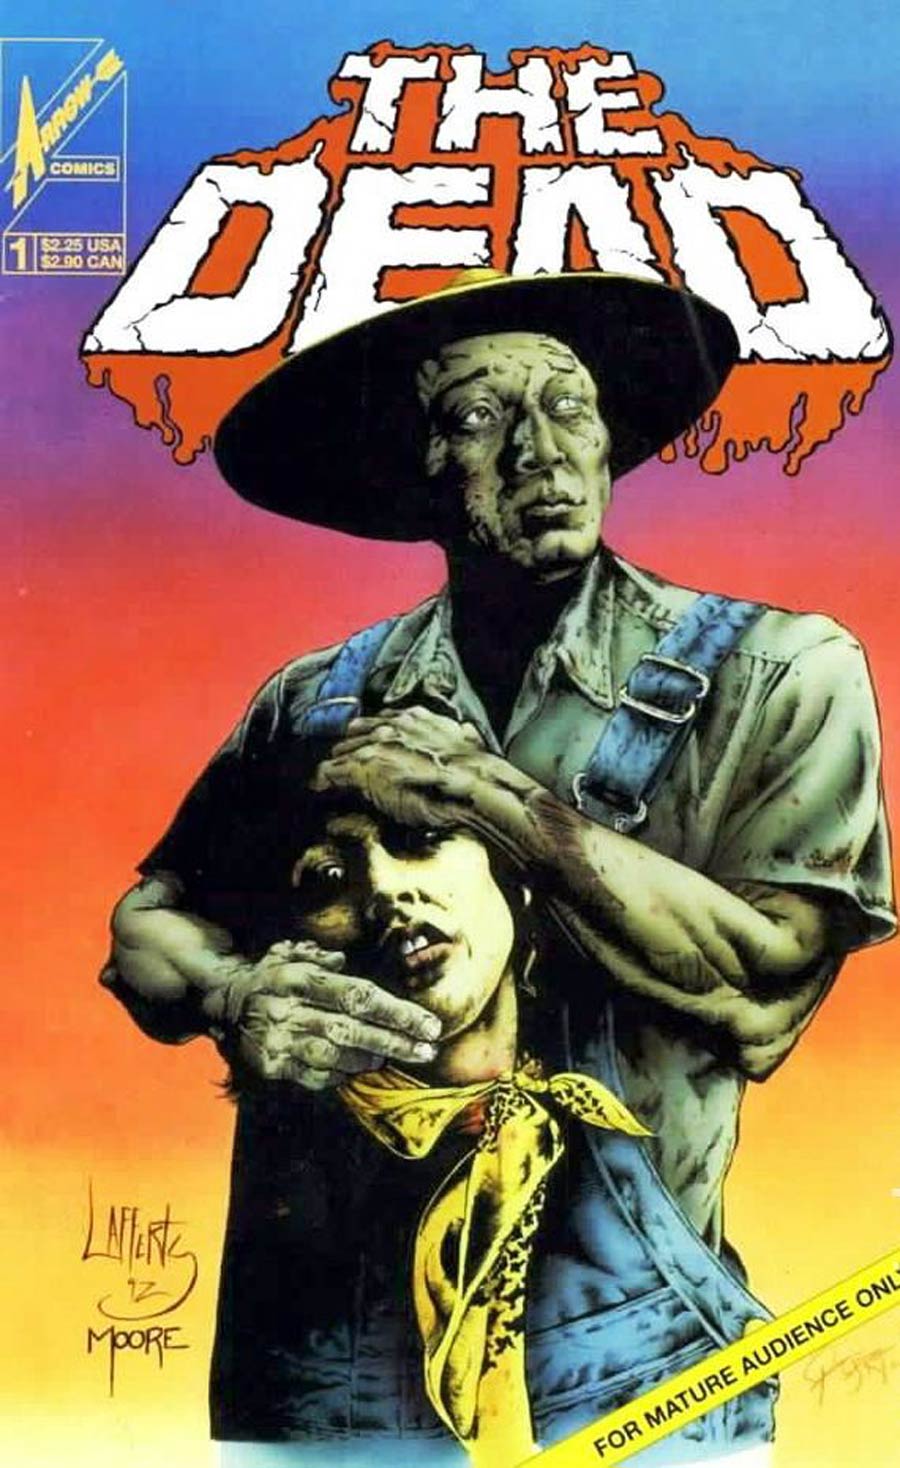 Dead (Arrow Comics) #1 Cover A